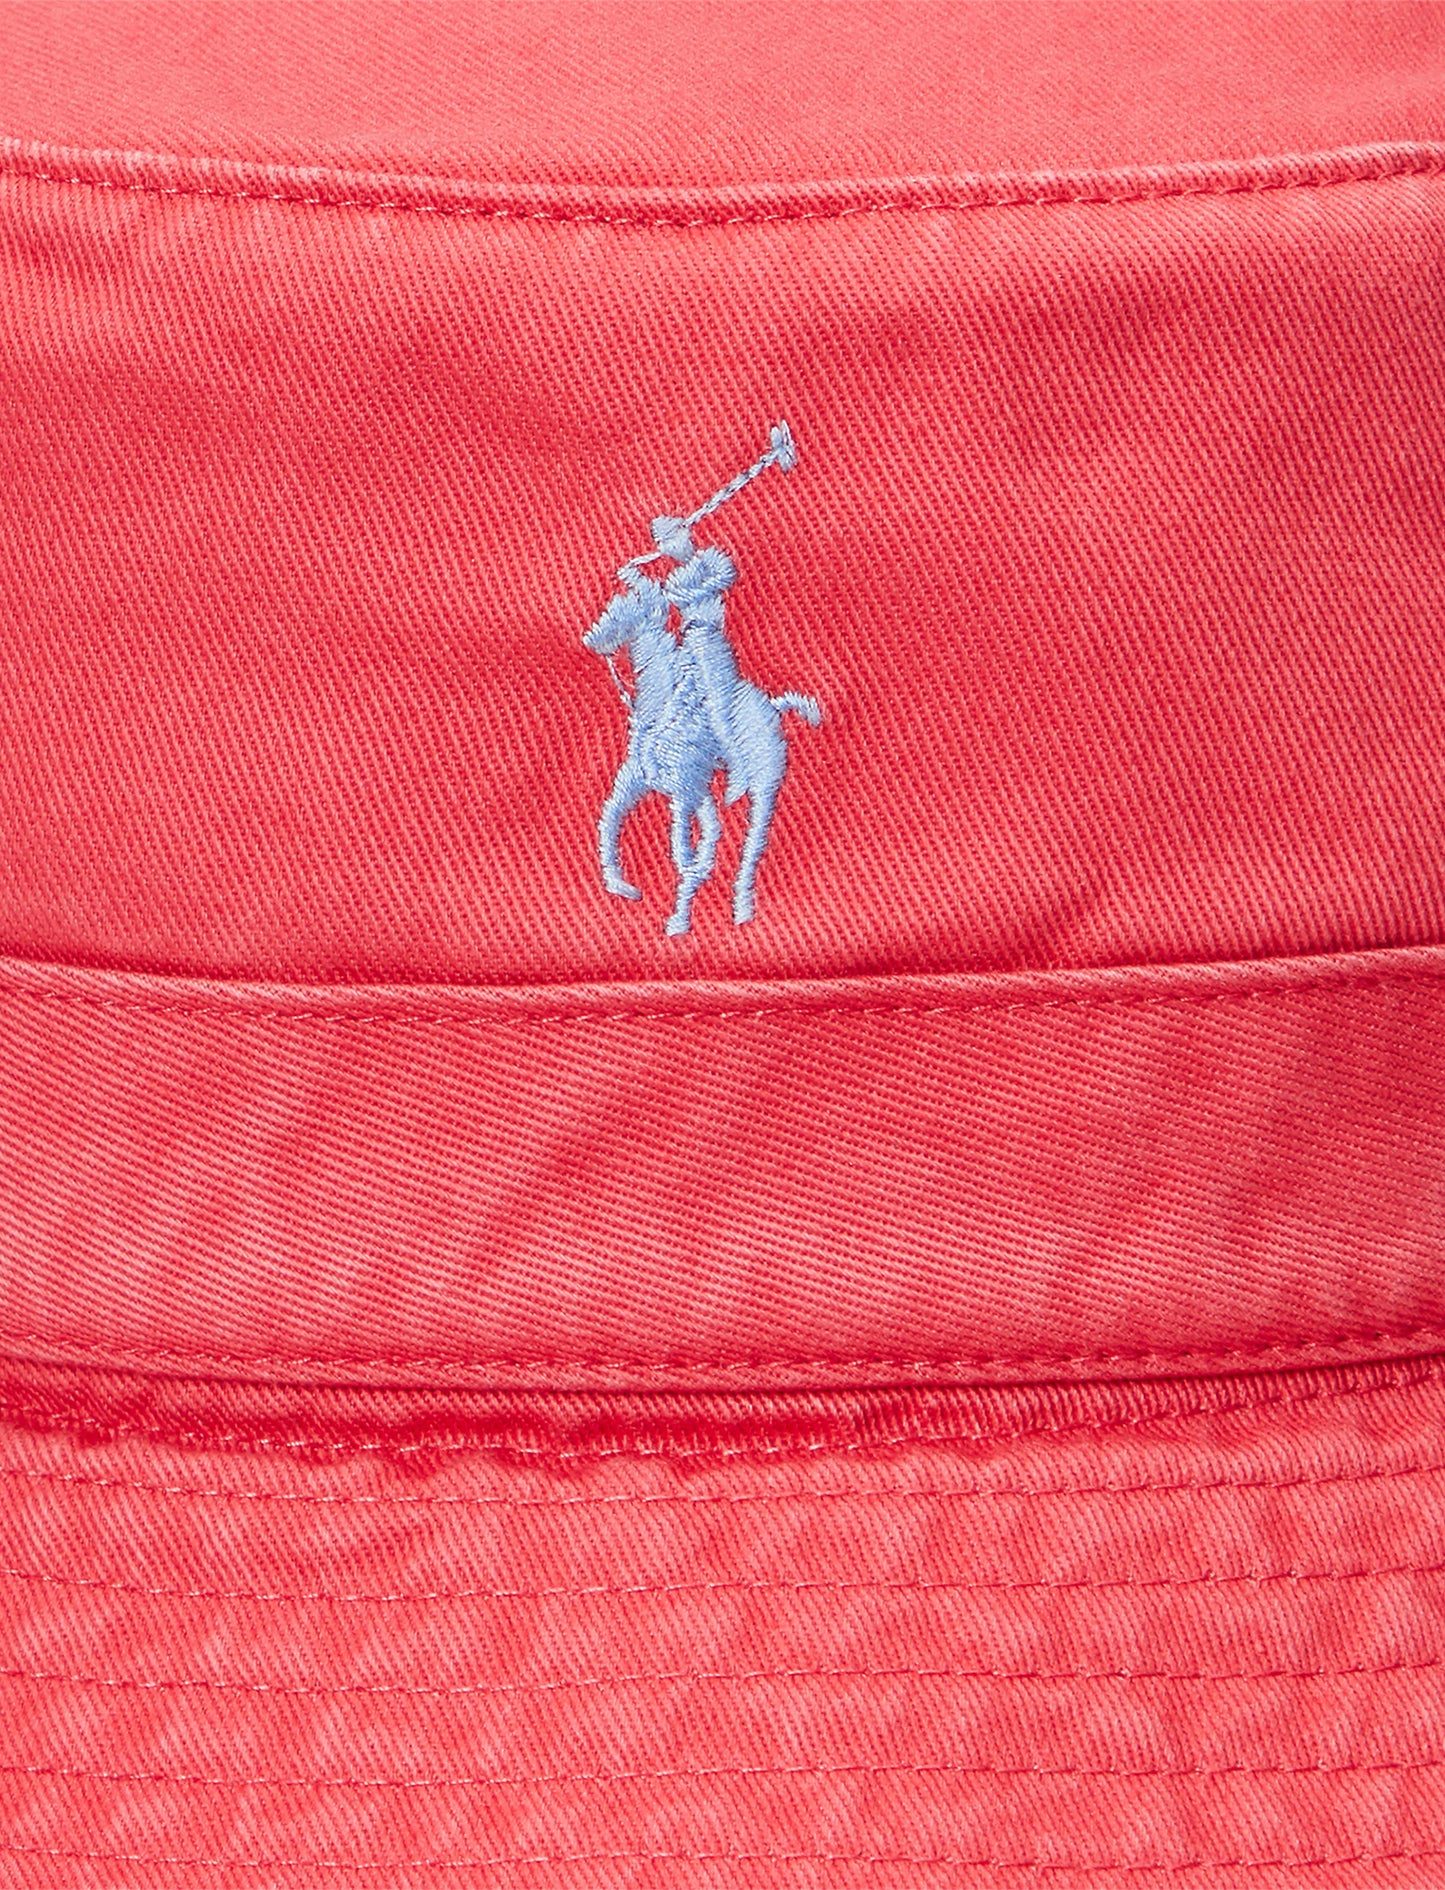 Polo Ralph Lauren Bucket Hat Red